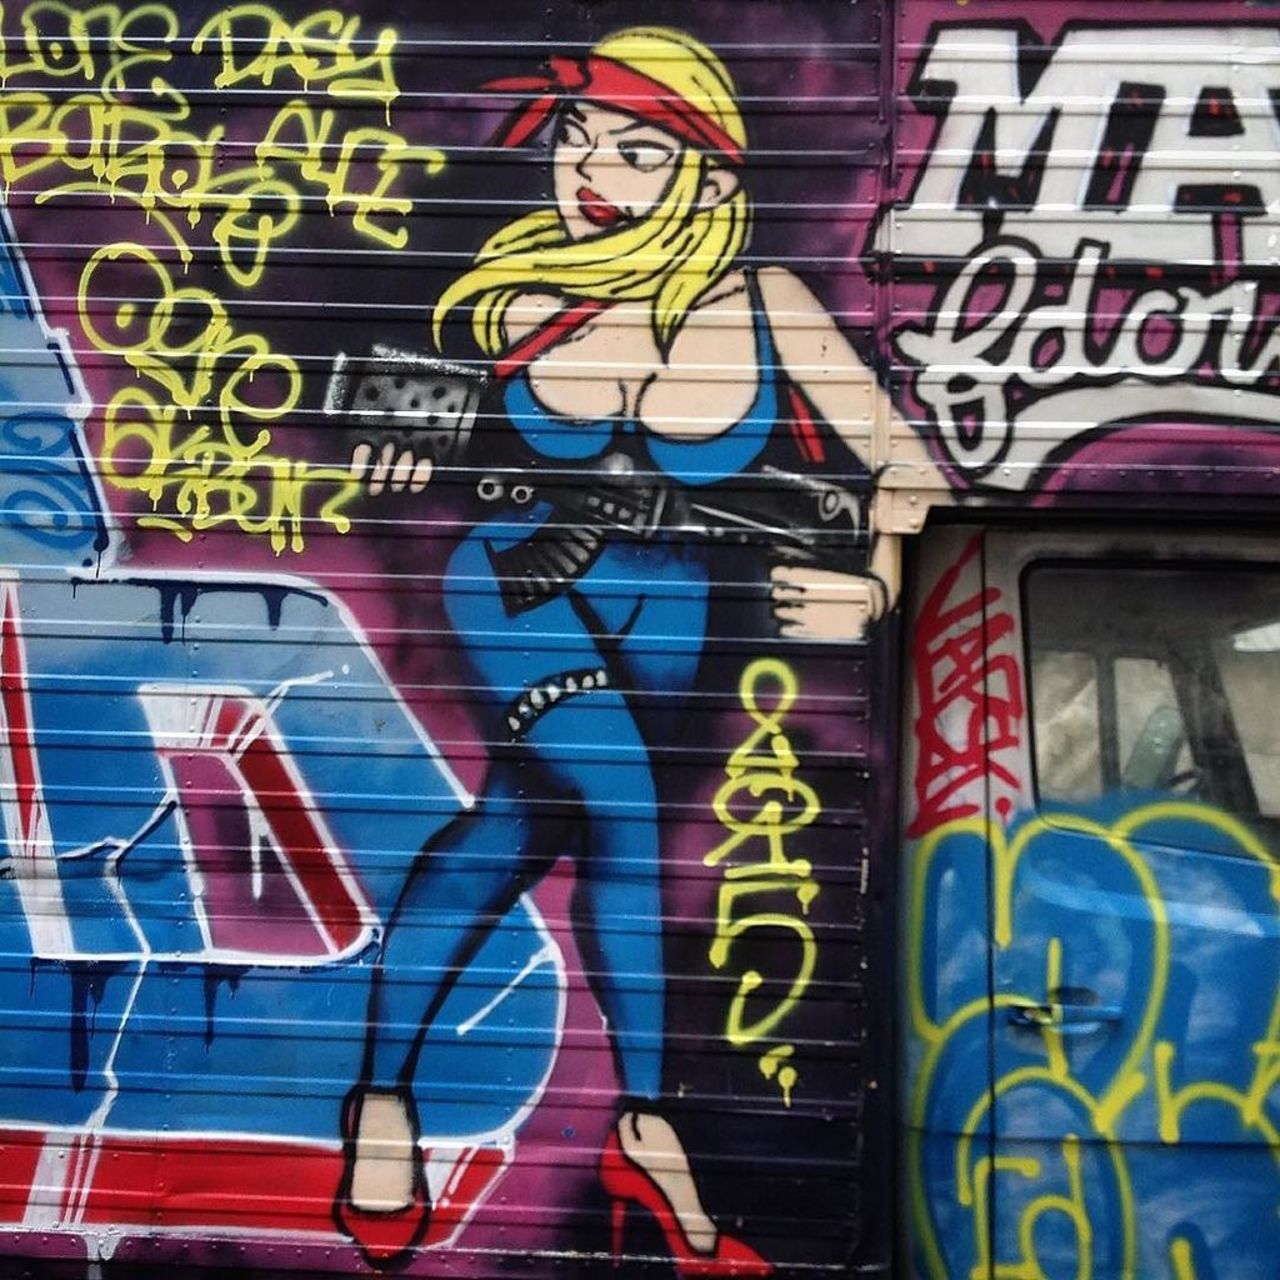 RT @StArtEverywhere: Faut pas l'énerver #girl #supergirl #street #streetart #streetartparis #graff #graffiti #wallart #sprayart #urban #… https://t.co/Tl6NrXlXkb